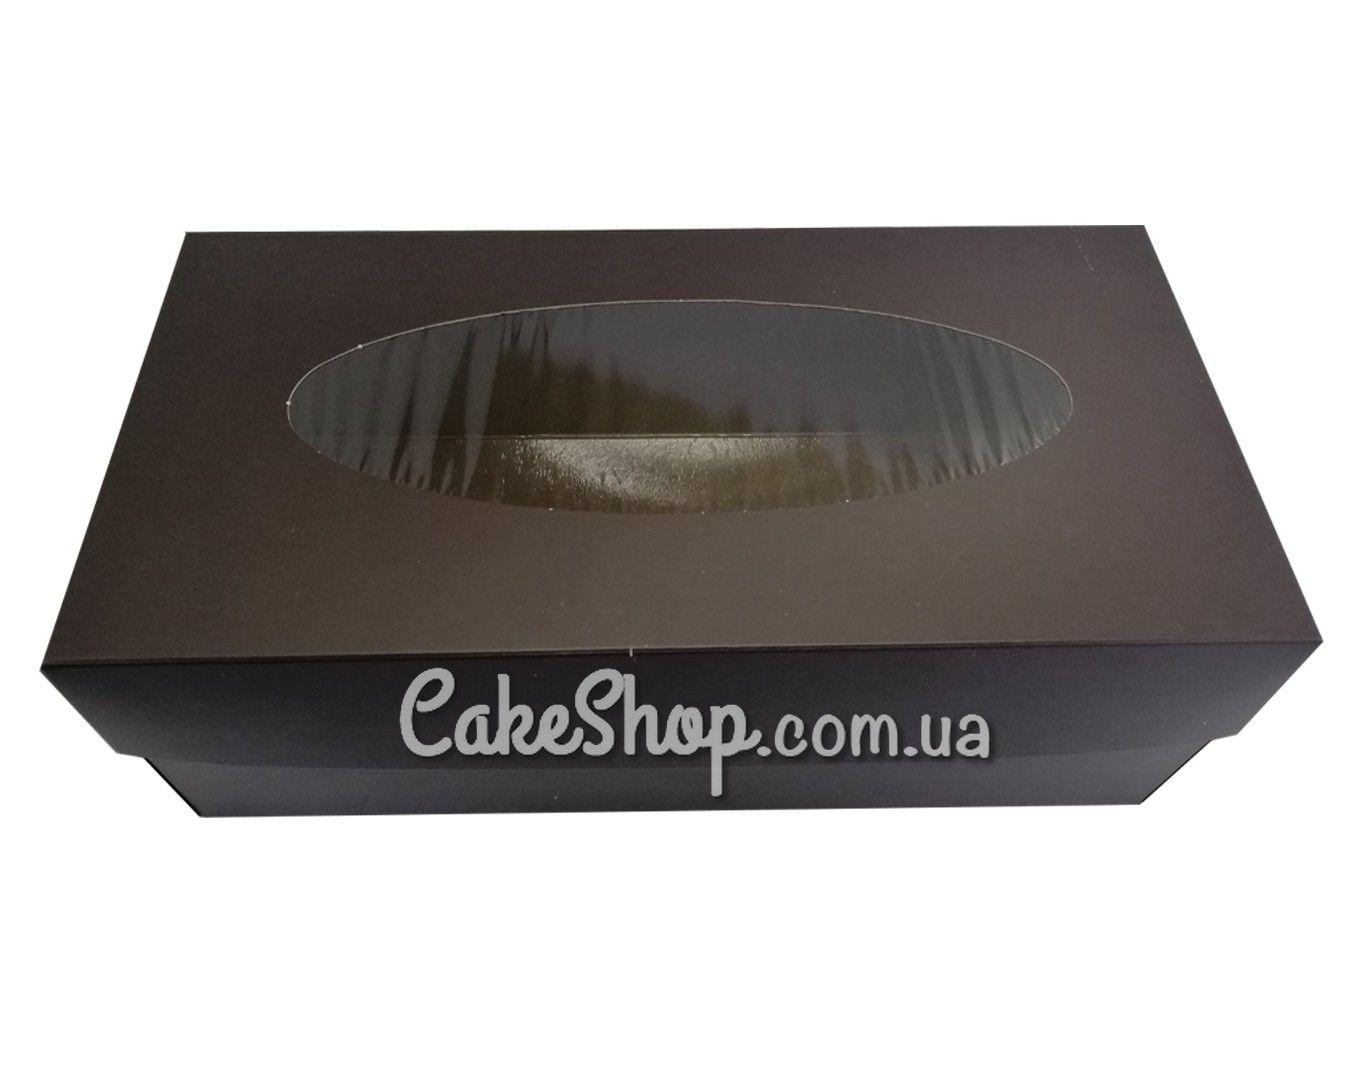 ⋗ Коробка для рулета, штоллена Черная, 15х30х11 см купить в Украине ➛ CakeShop.com.ua, фото